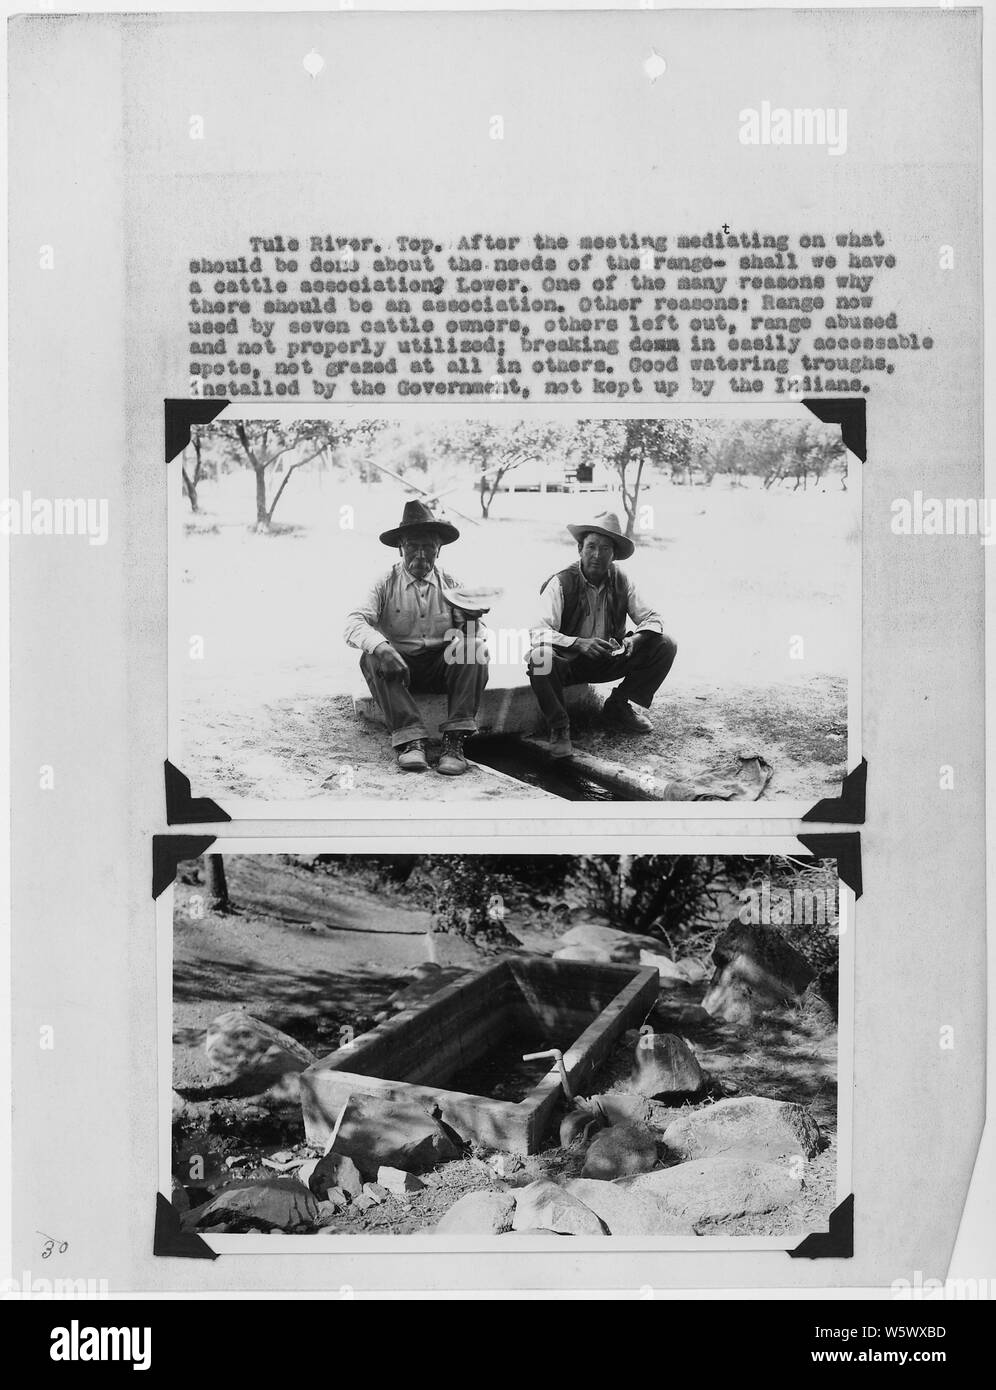 Les photographies, accompagnées de légendes, concernant une association de bovins à Tule River, en Californie, du rapport annuel de vulgarisateurs...Agence indienne de Sacramento en Californie [de] le 1er janvier 1936 au 31 décembre 1936. Banque D'Images